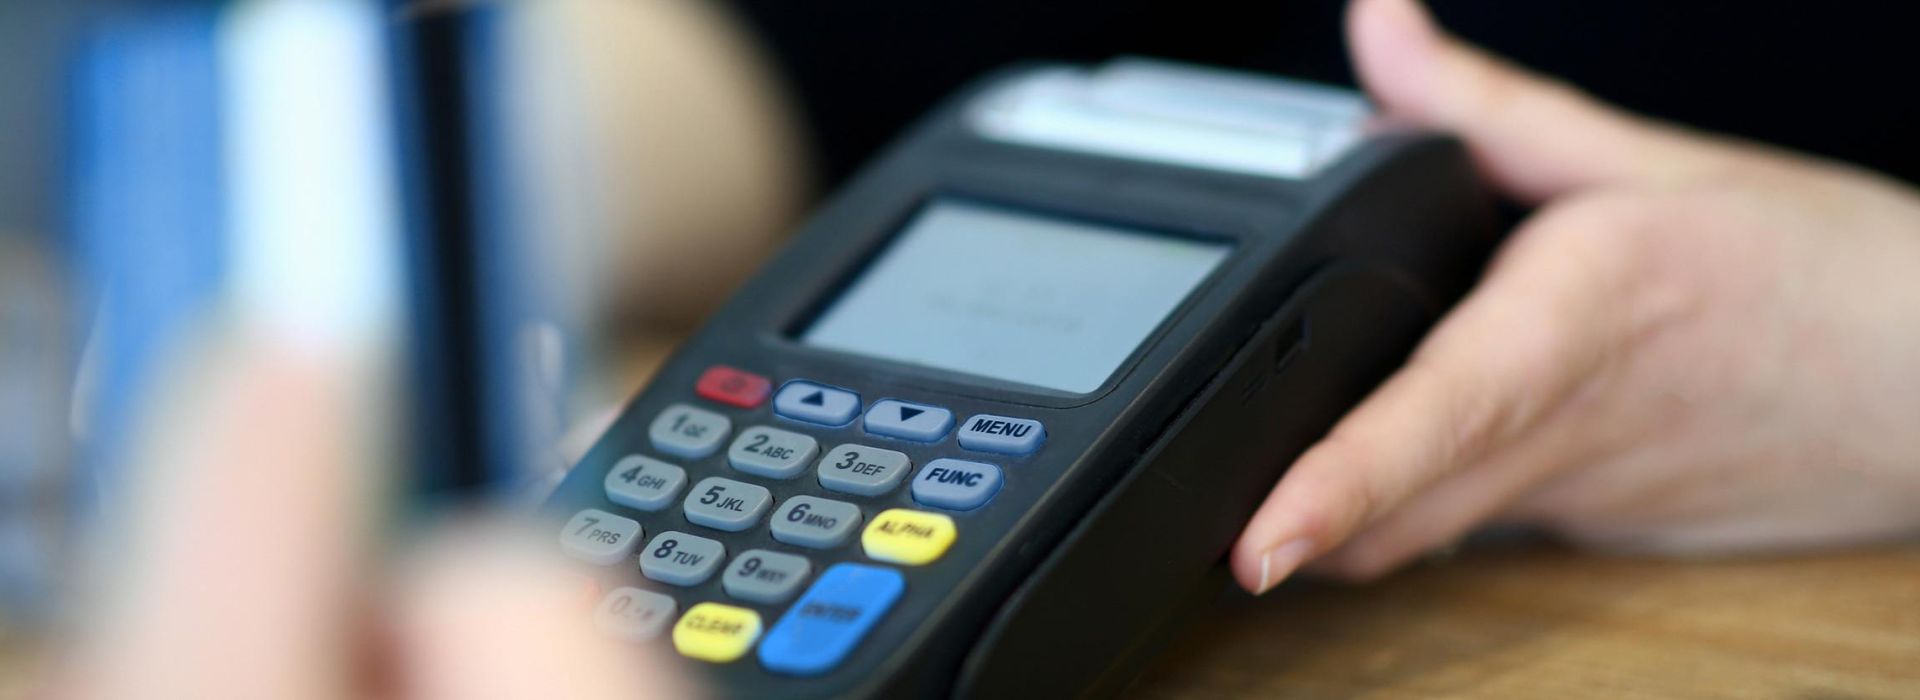 Eine Person hält ein EC-Cashgerät in den Händen.